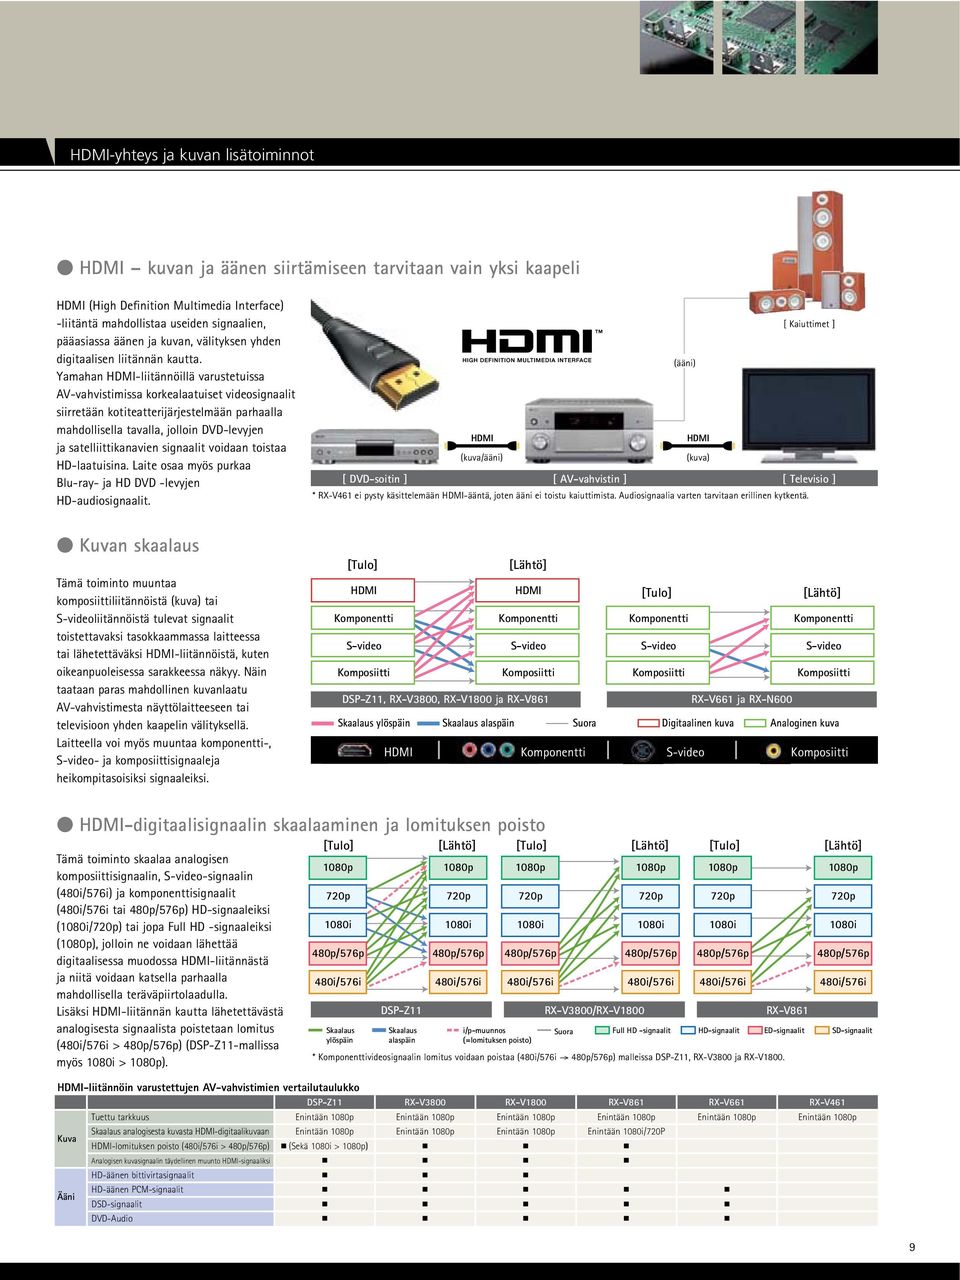 Yamahan HDMI-liitännöillä varustetuissa AV-vahvistimissa korkealaatuiset videosignaalit siirretään kotiteatterijärjestelmään parhaalla mahdollisella tavalla, jolloin DVD-levyjen ja